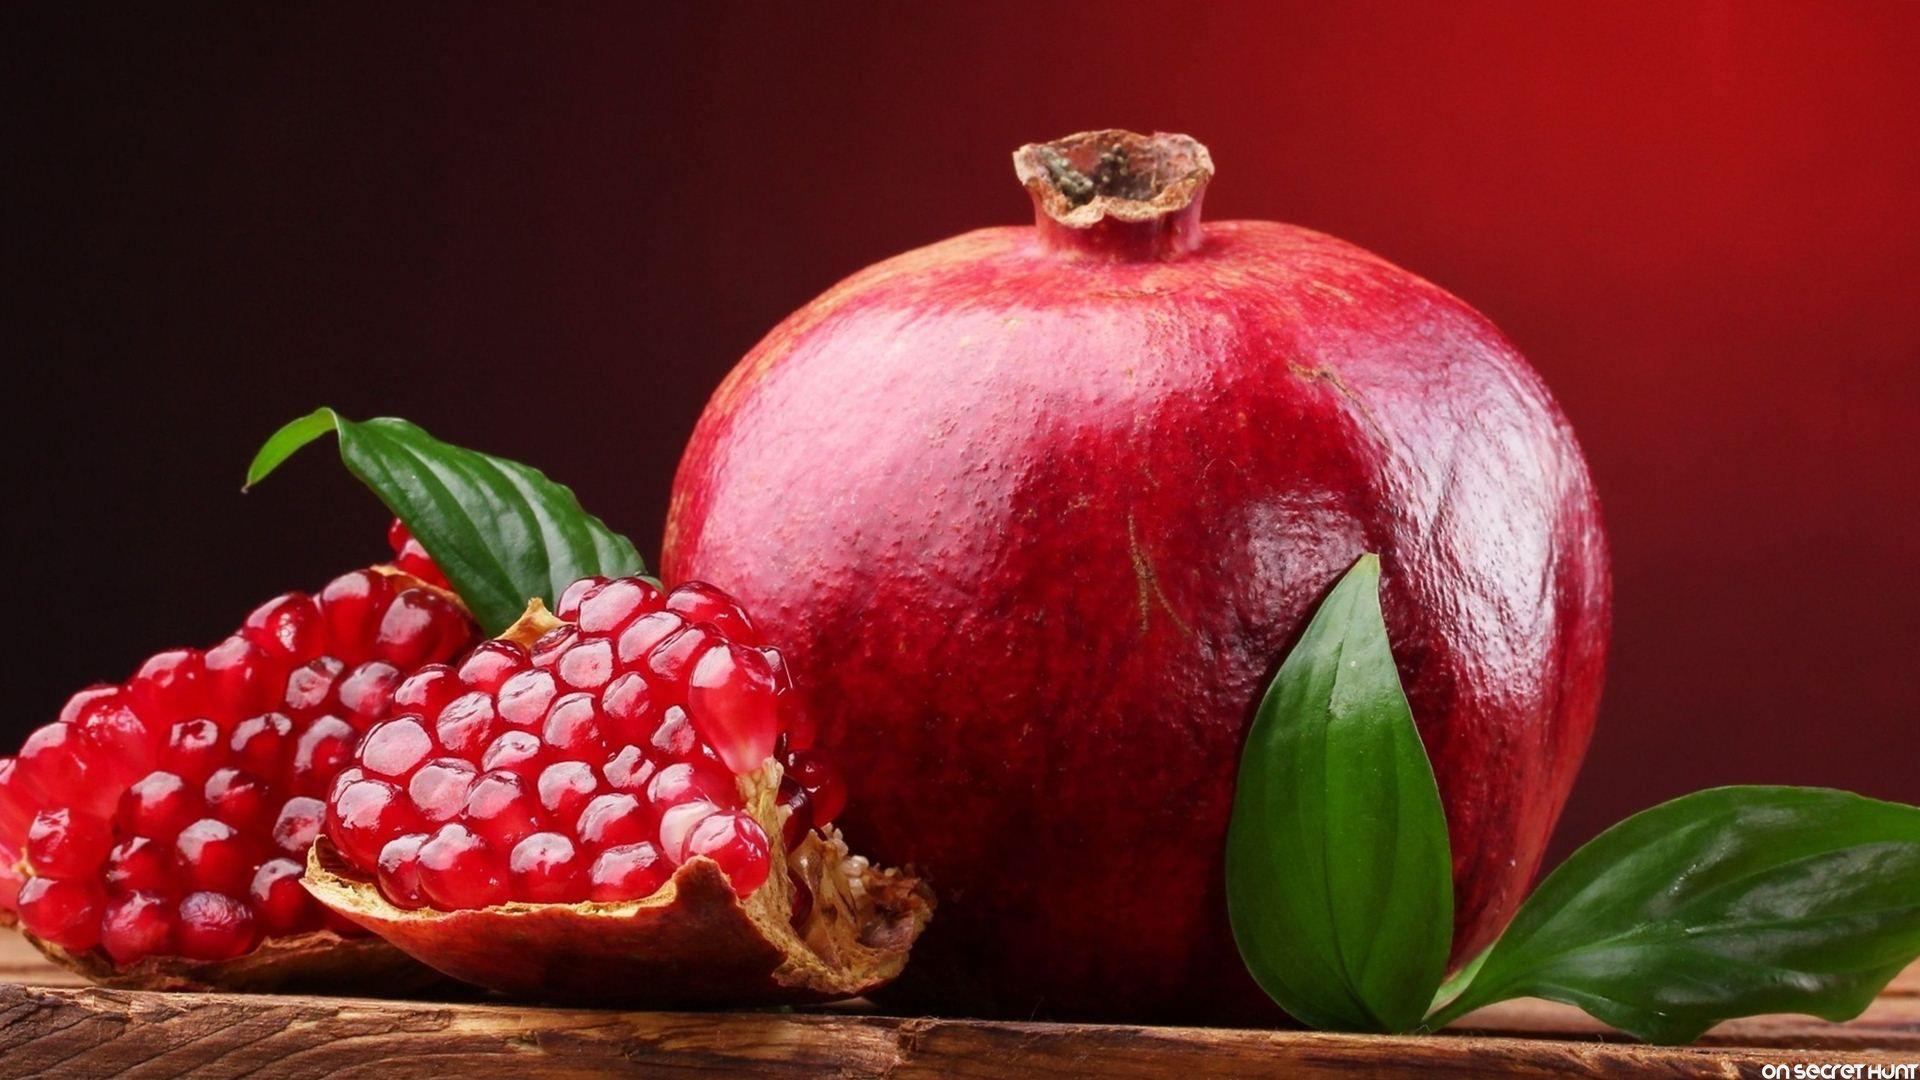 pomegranate images hd à®à¯à®à®¾à®© à®ªà® à®®à¯à®à®¿à®µà¯